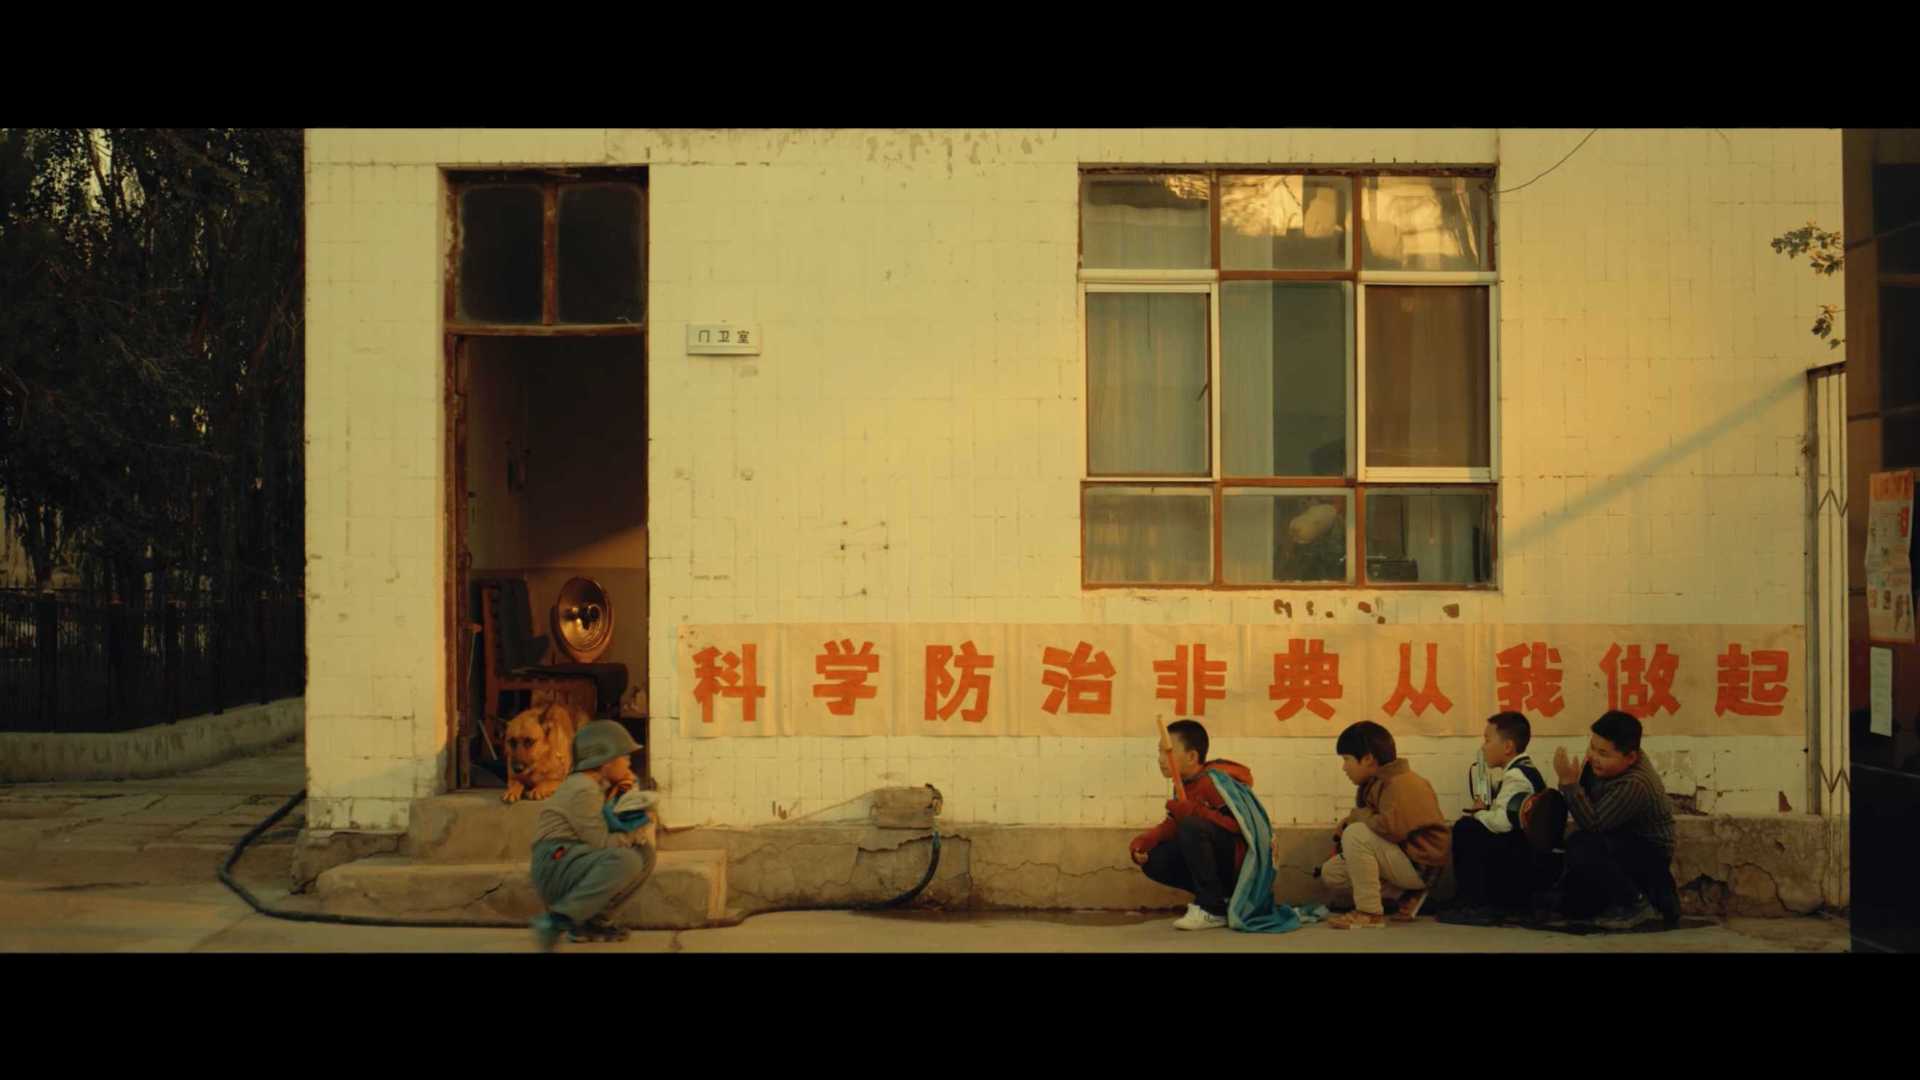 中国电影家协会扶持短片《暖洋洋的春天》